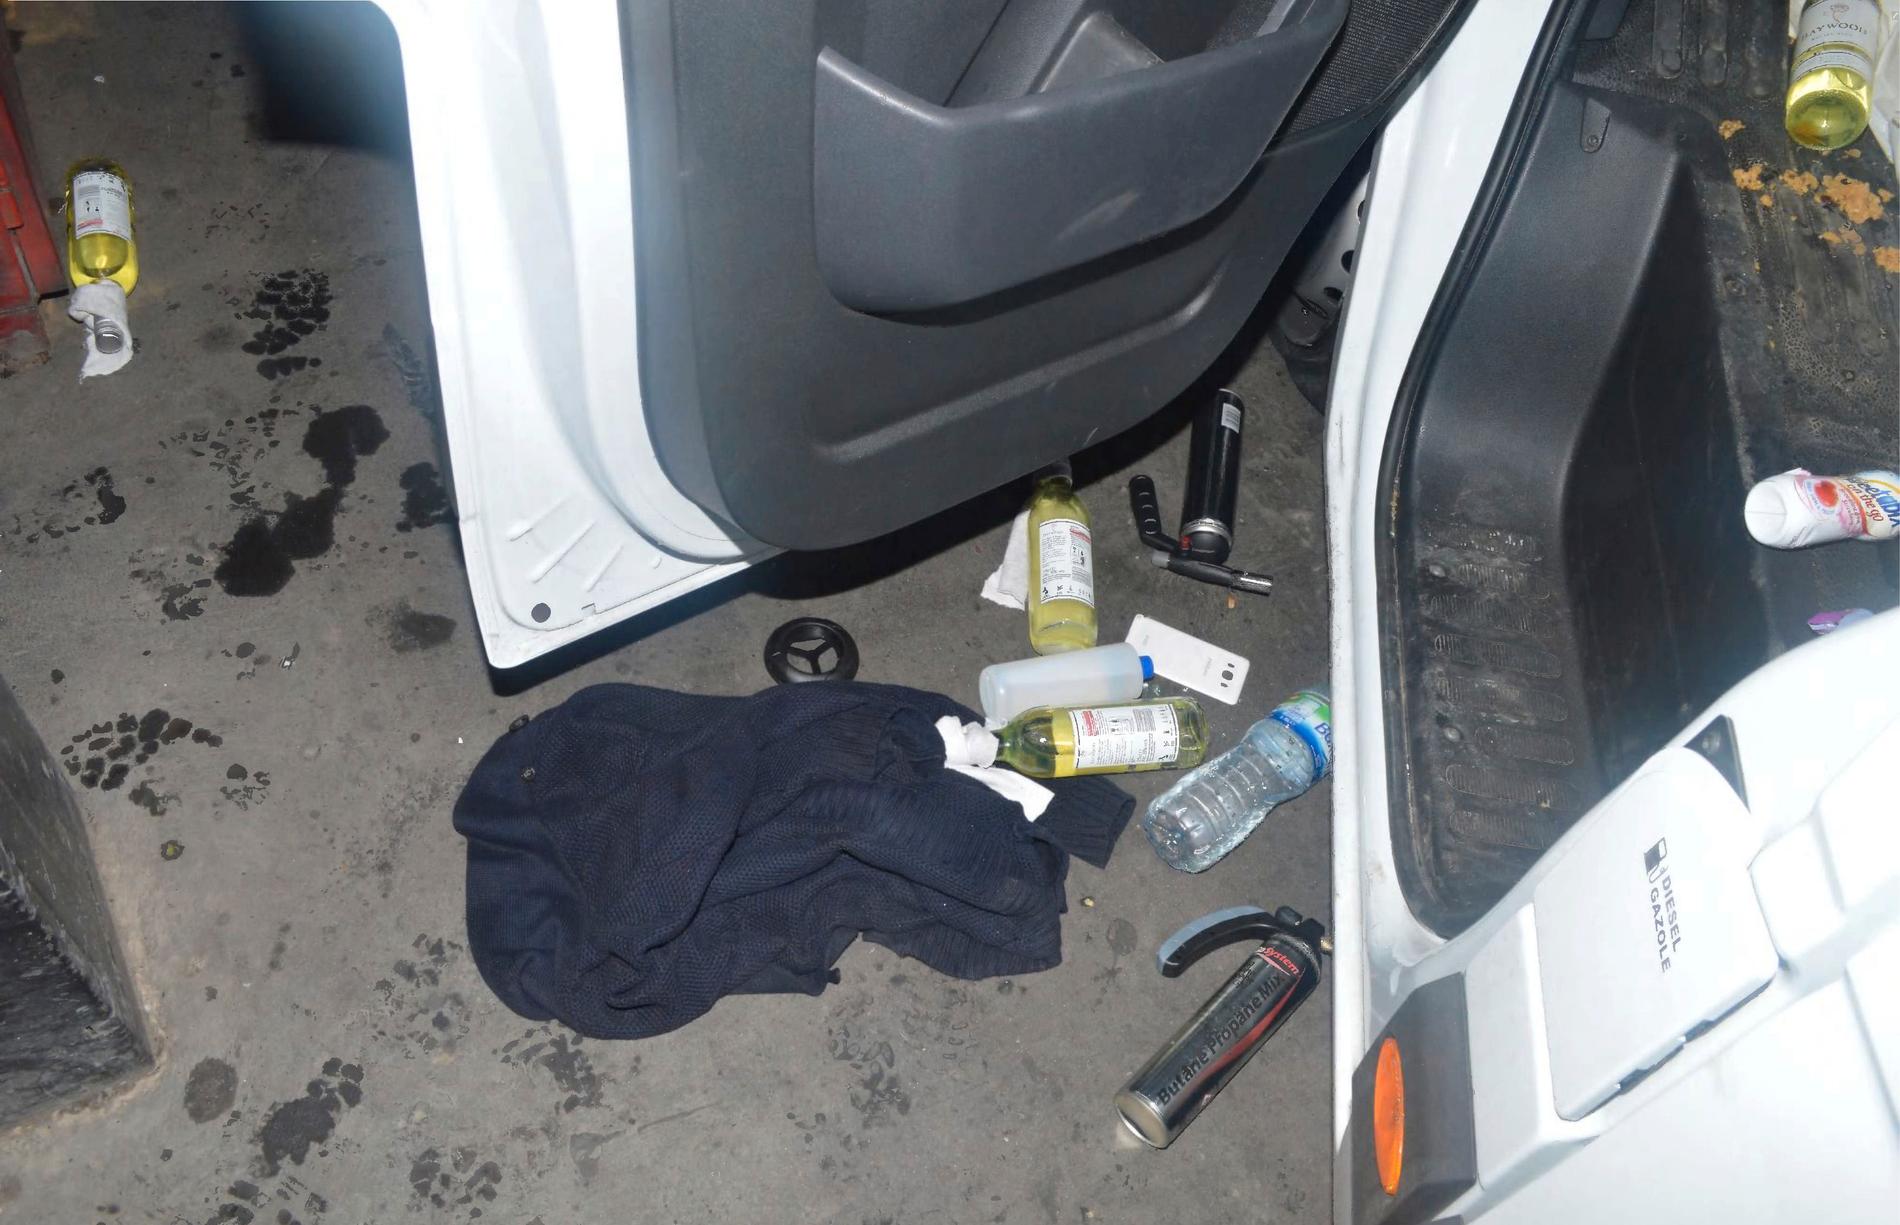 Förberedda molotovcocktails i form av vinflaskor virade i trasor hittades i skåpbilens bagageutrymme.